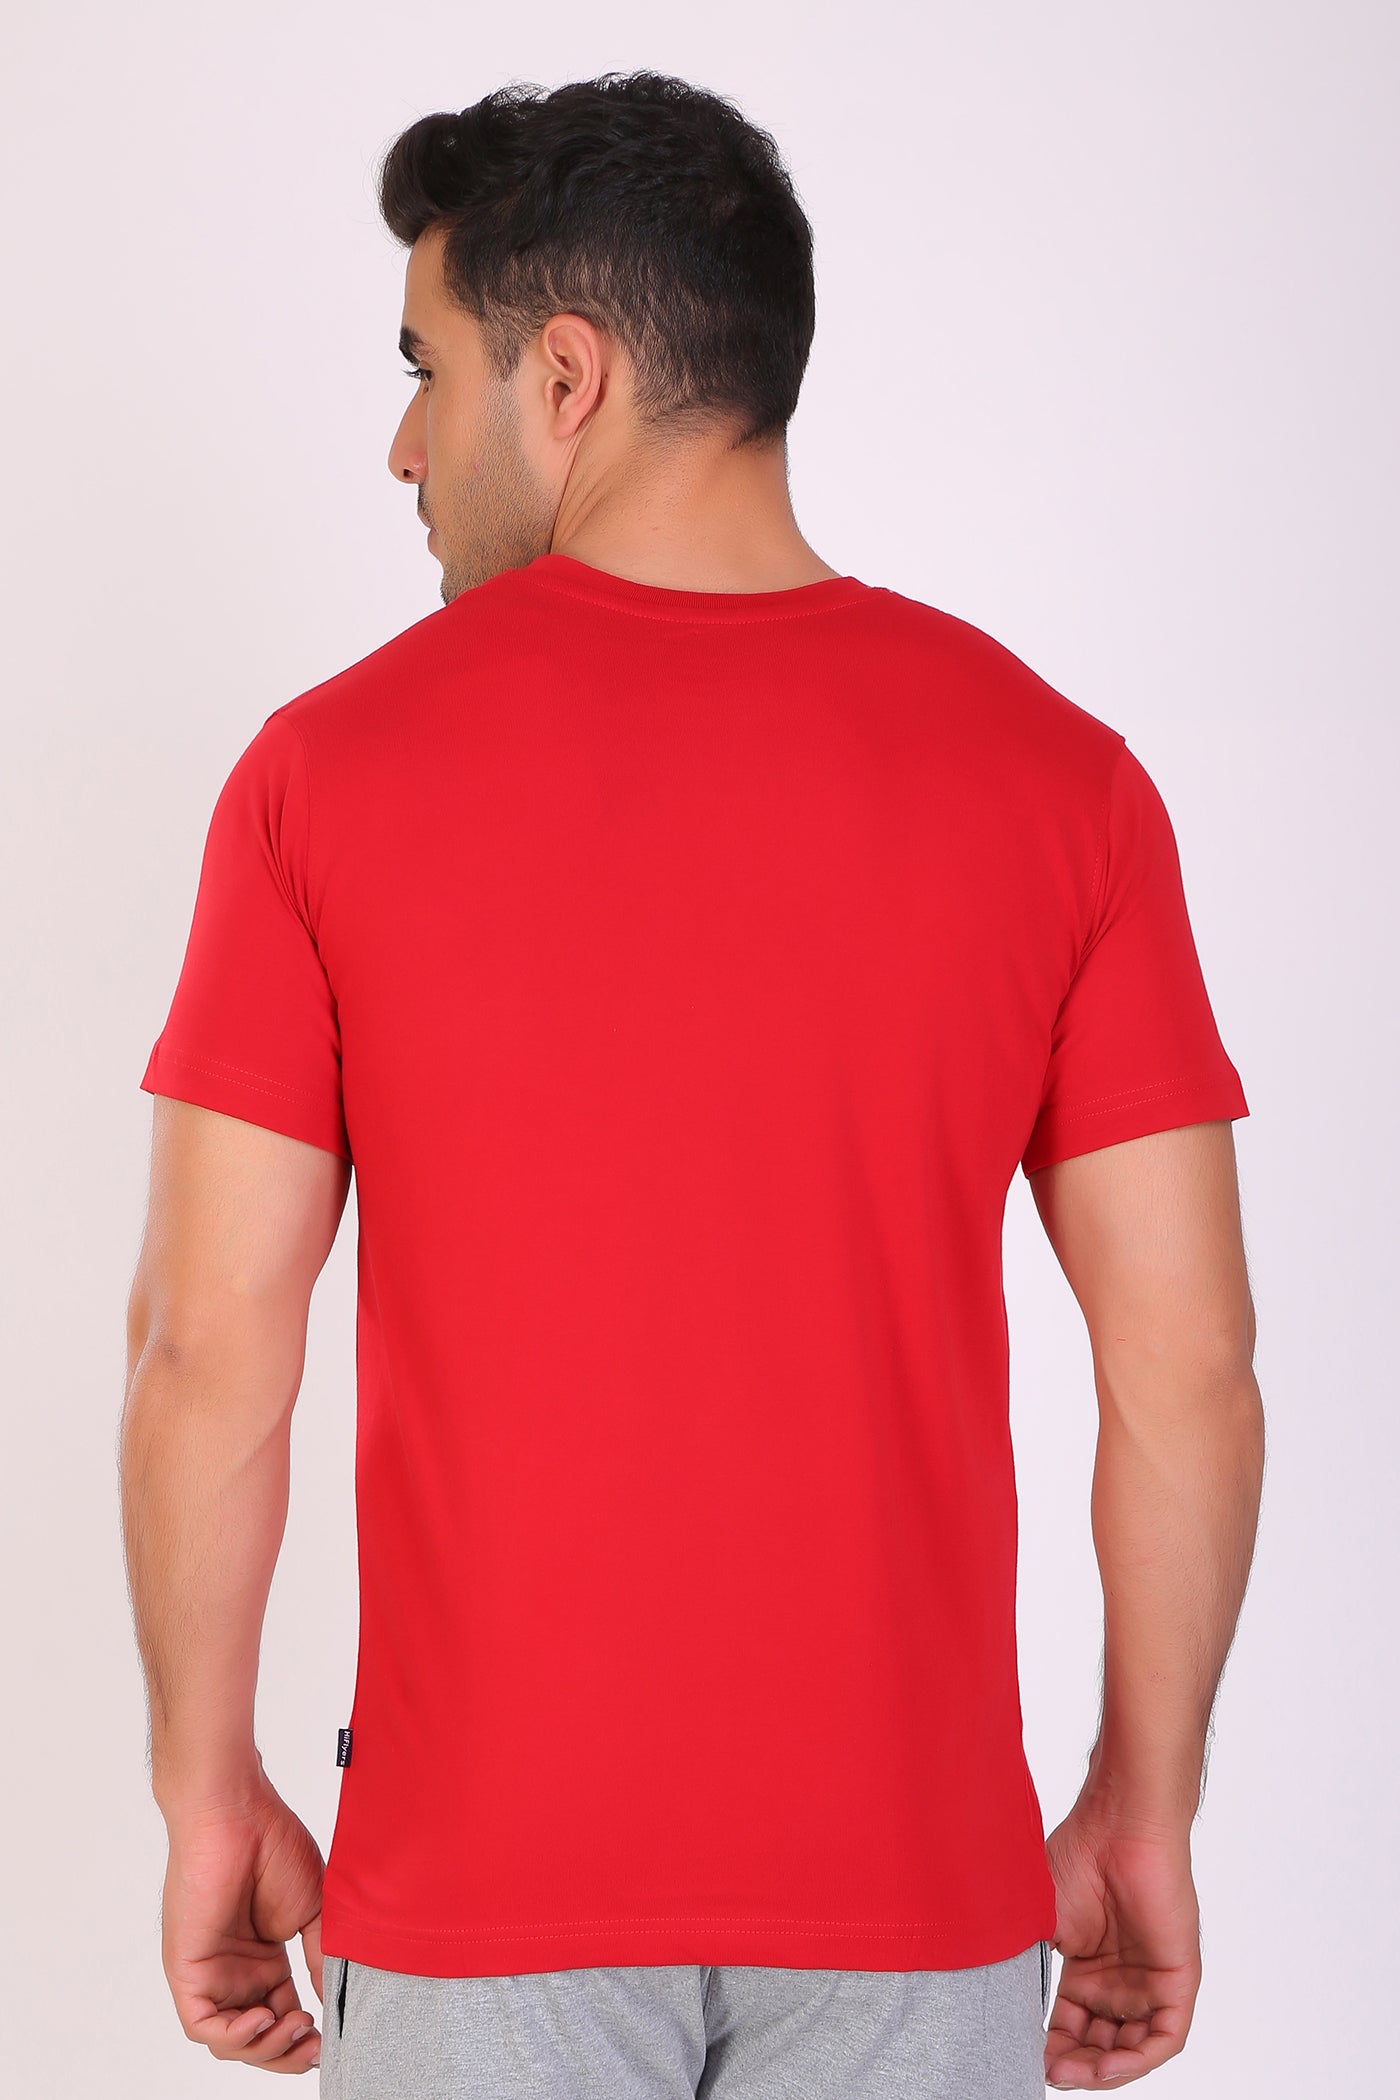 Buy Men Round Neck Red T-shirt At ₹333: TT Bazaar 80cm/S